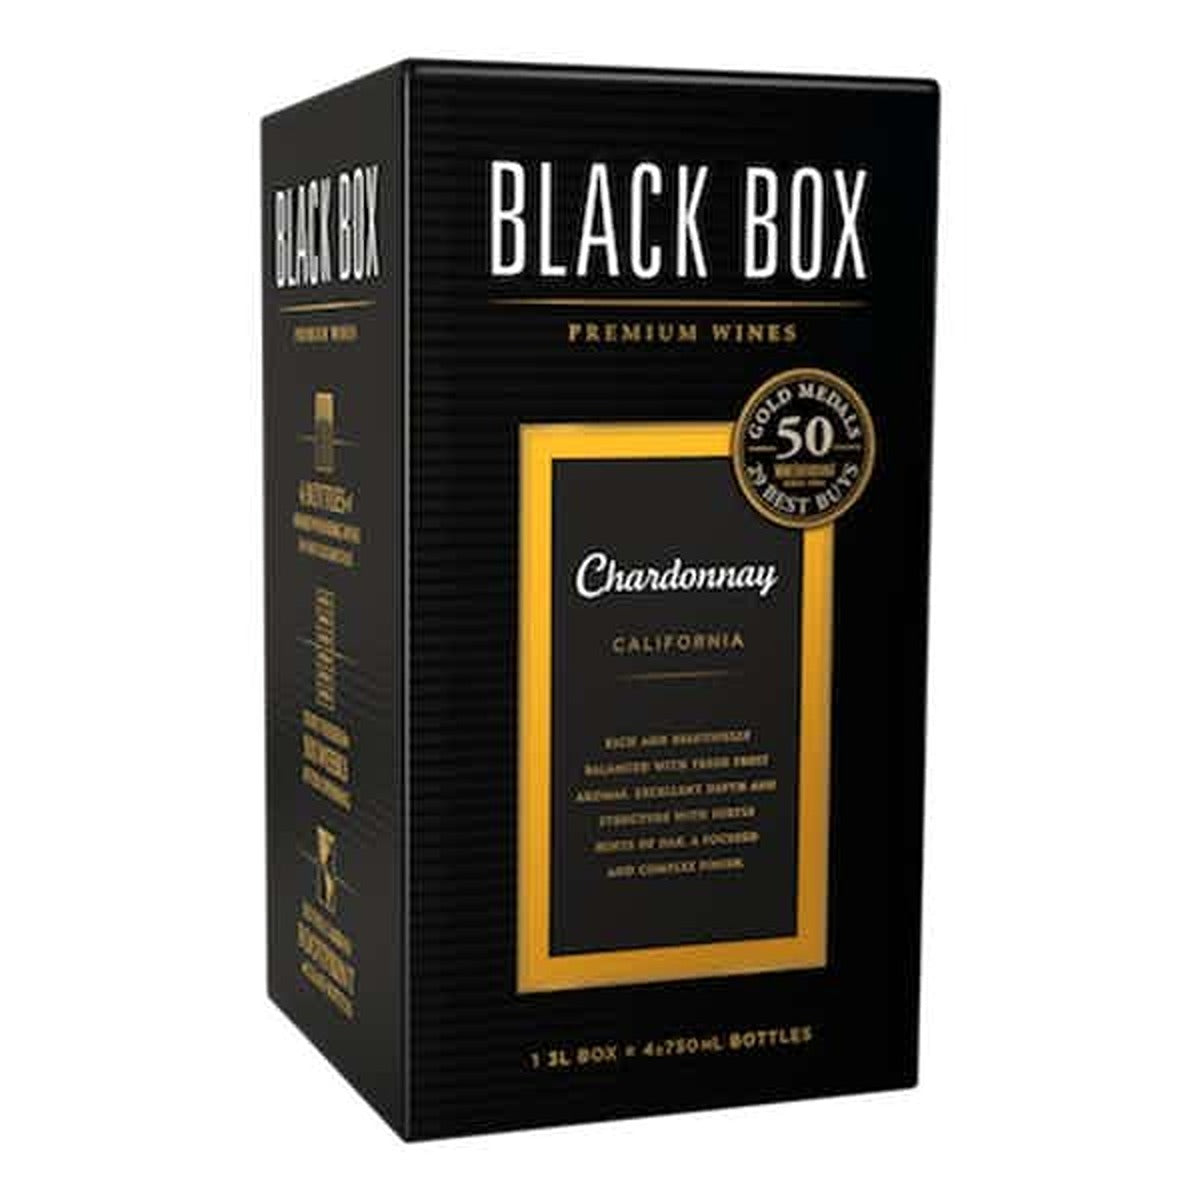 BLACK BOX CHARD 3L